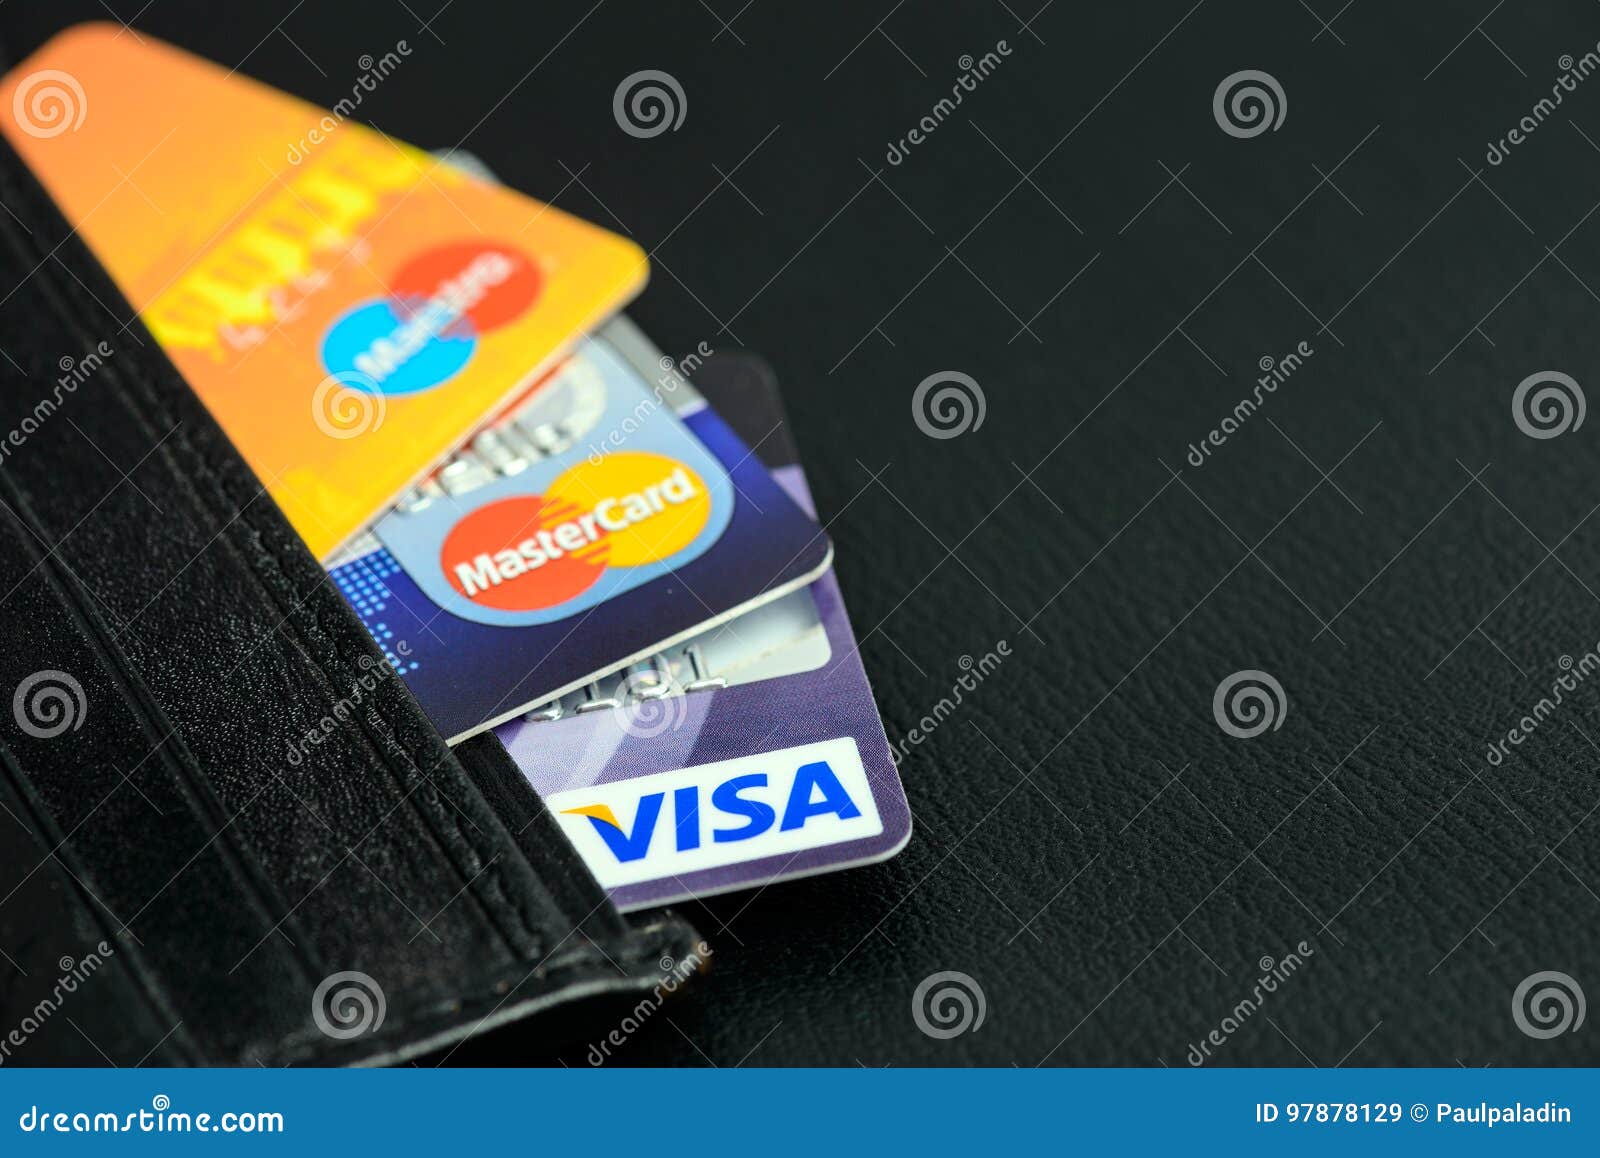 visa mastercard wallet